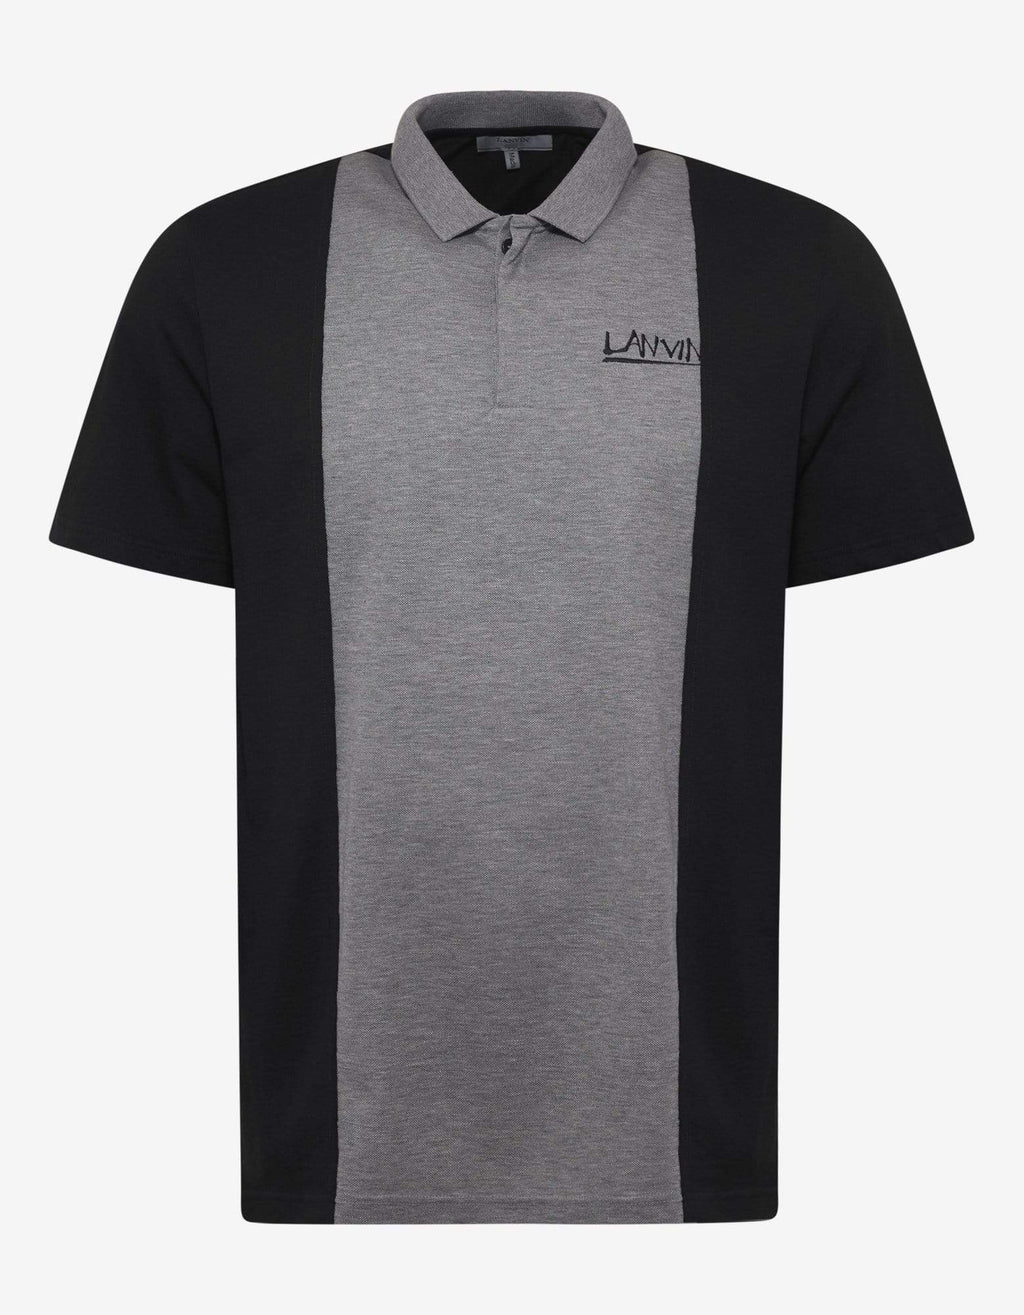 Lanvin Lanvin Grey & Black Logo Embroidery Polo T-Shirt